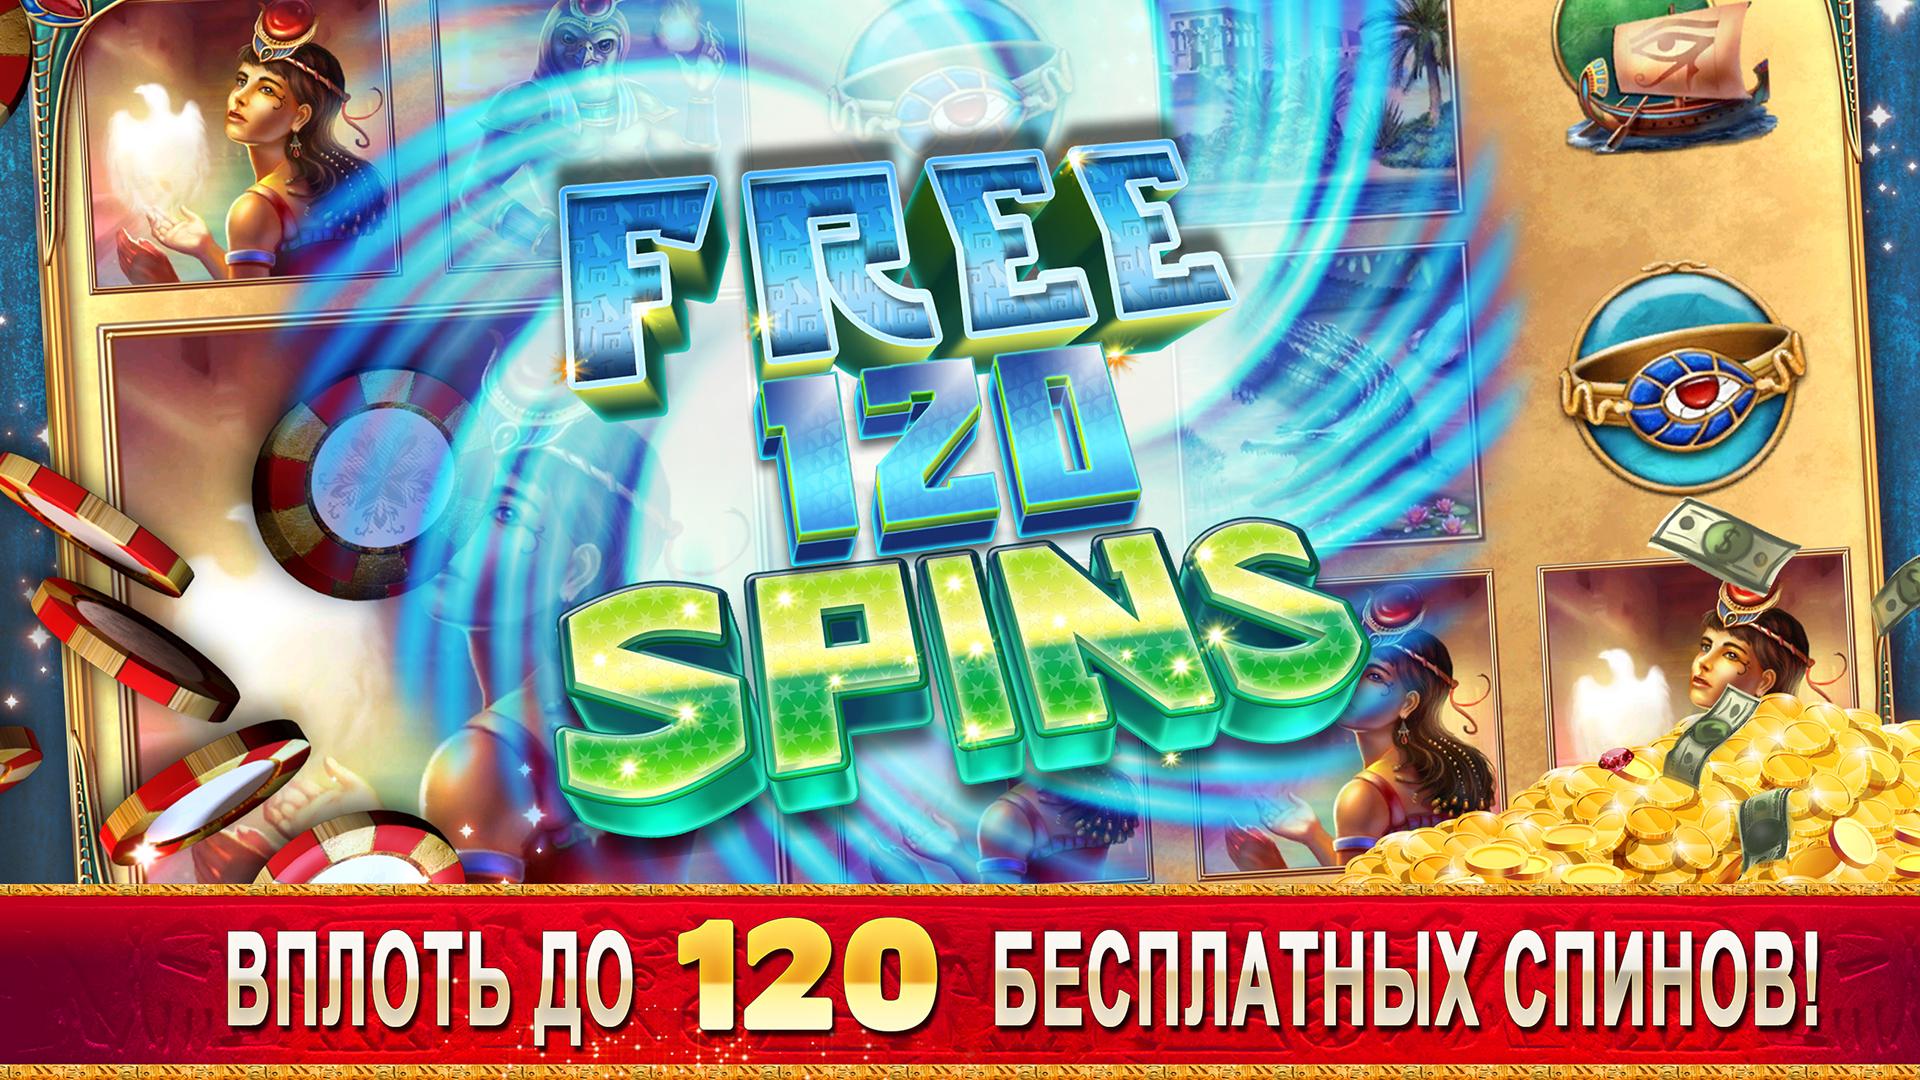 Android application Casino Games - Slots screenshort